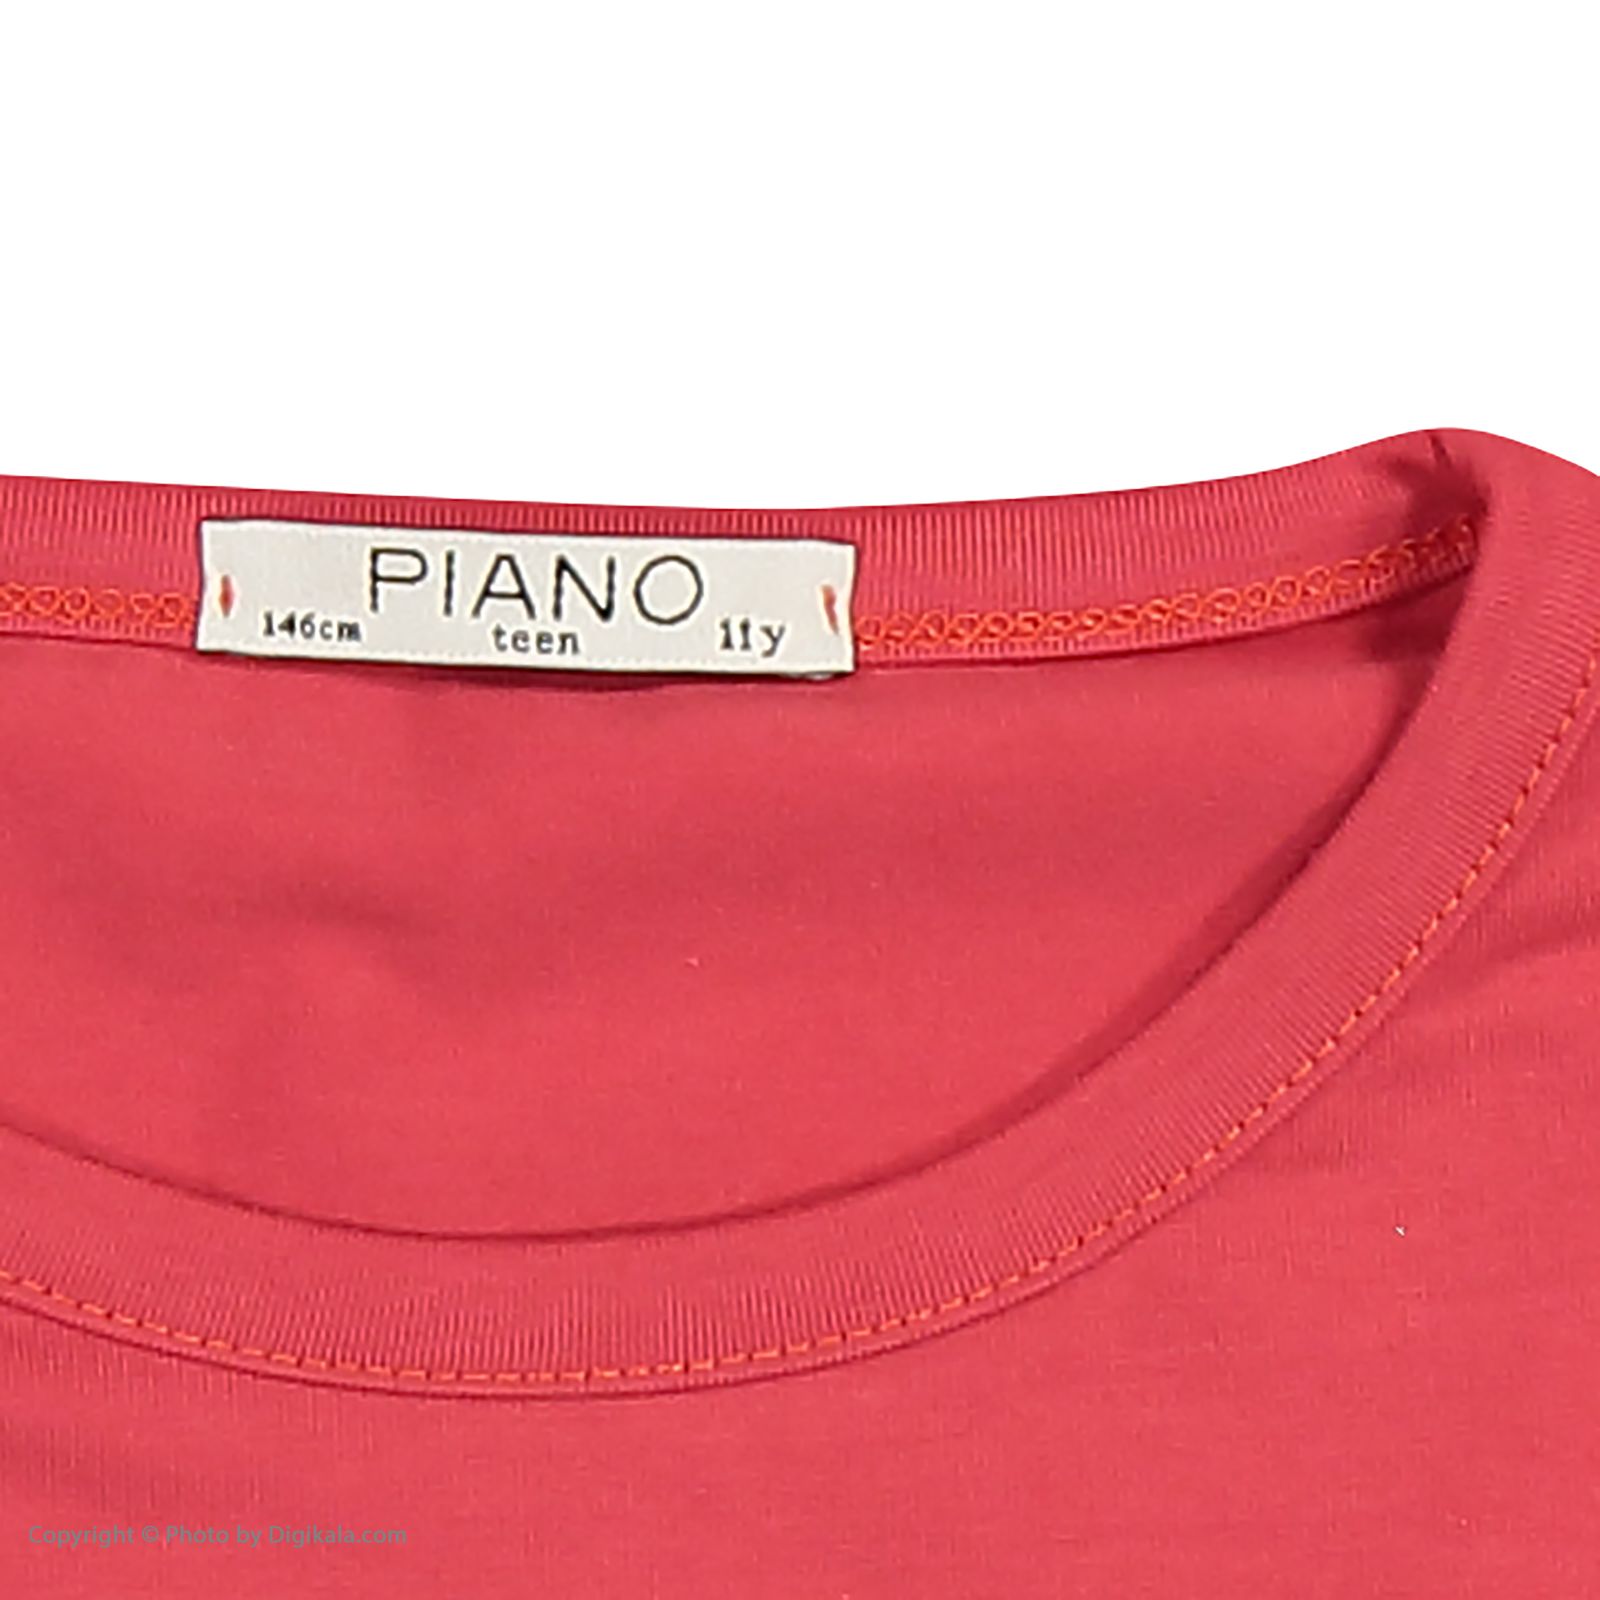 تی شرت دخترانه پیانو مدل 1009009801047-72 -  - 5